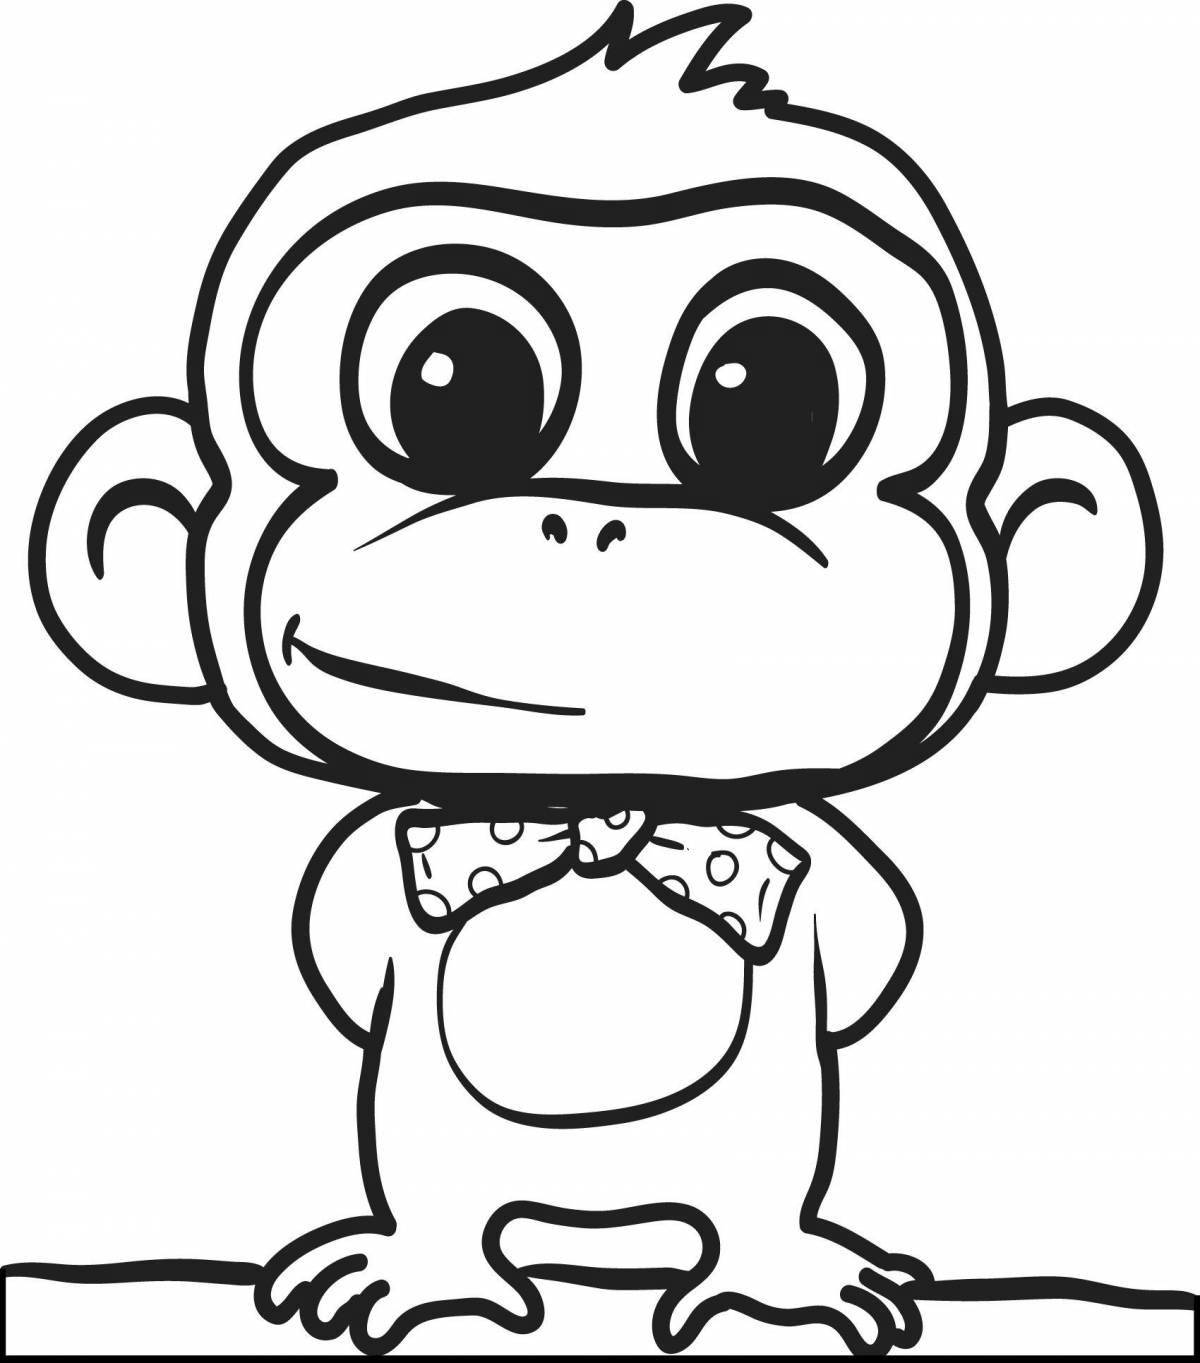 Увлекательная раскраска обезьяна для детей